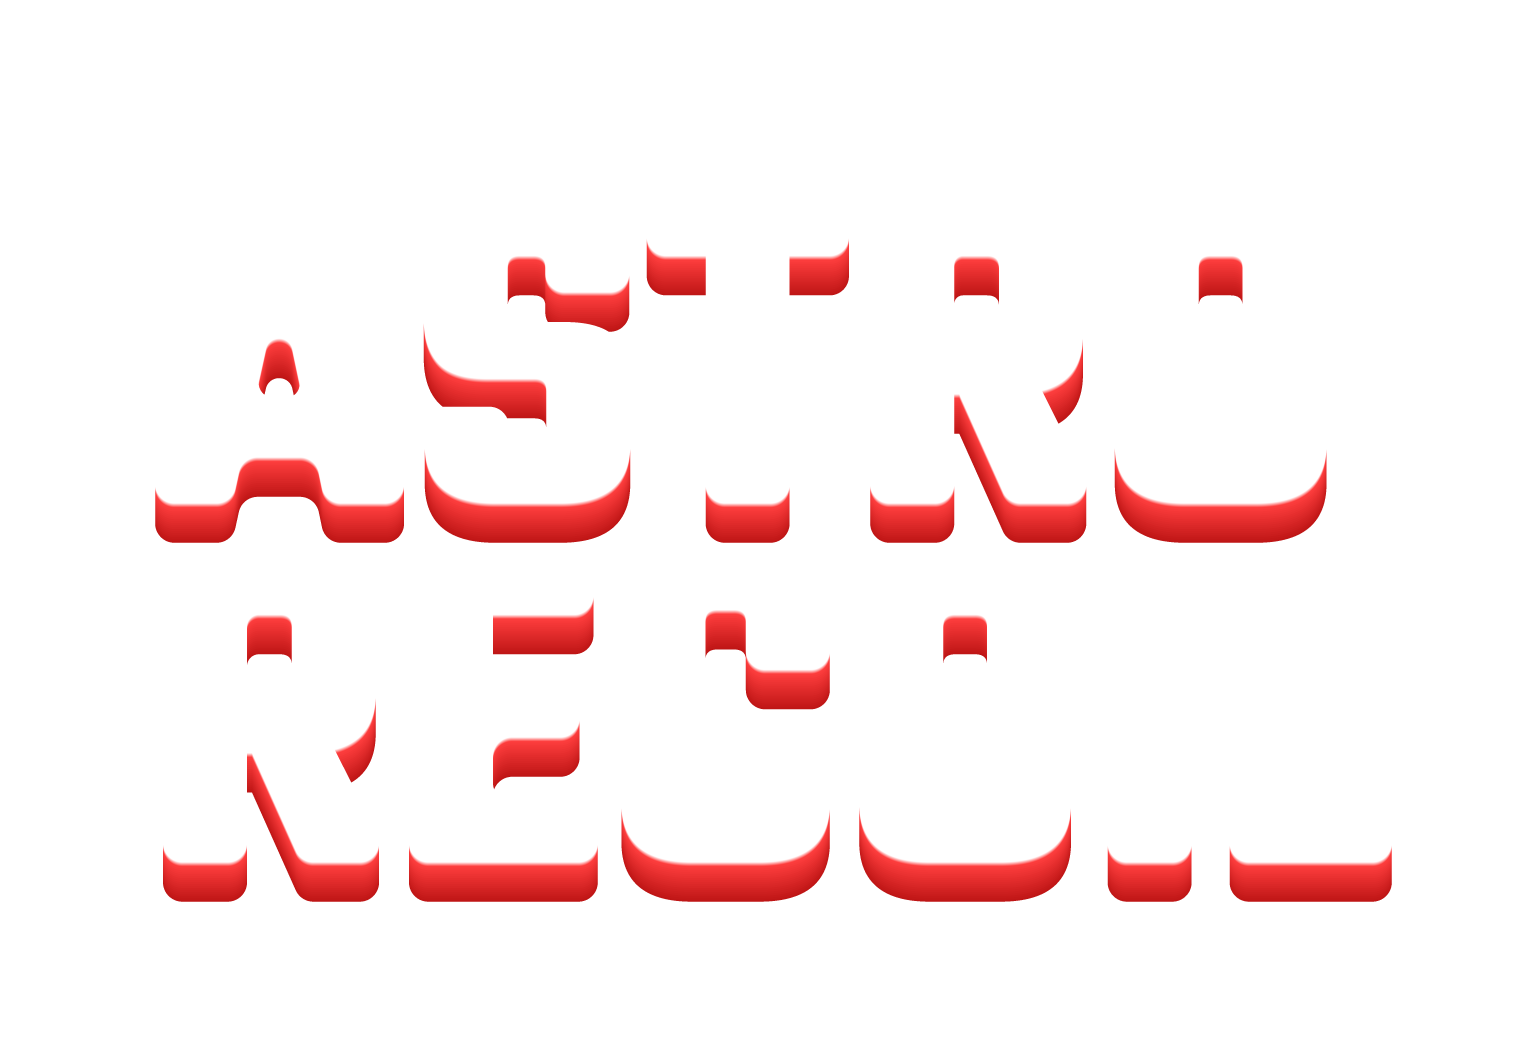 Astro Recoil